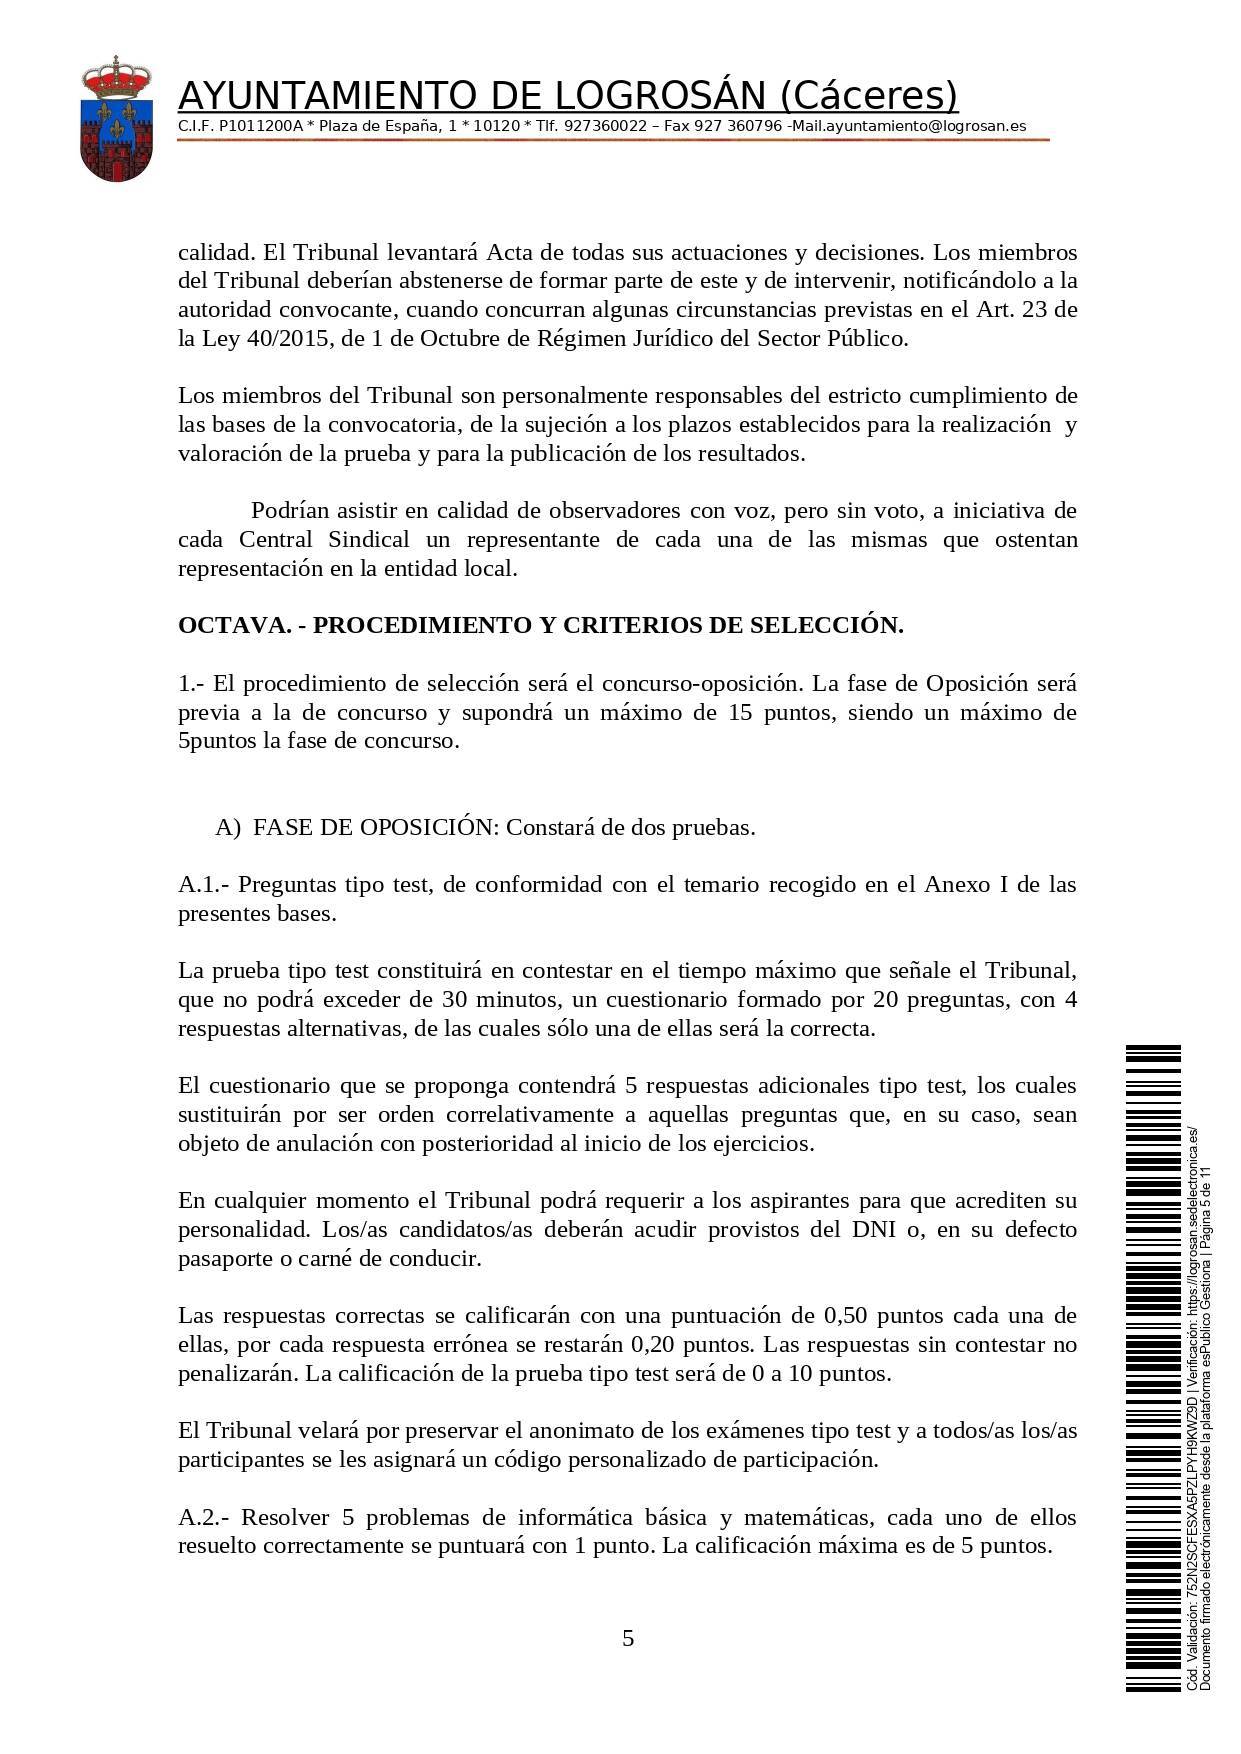 Bolsa de una alguacil (2021) - Logrosán (Cáceres) 5